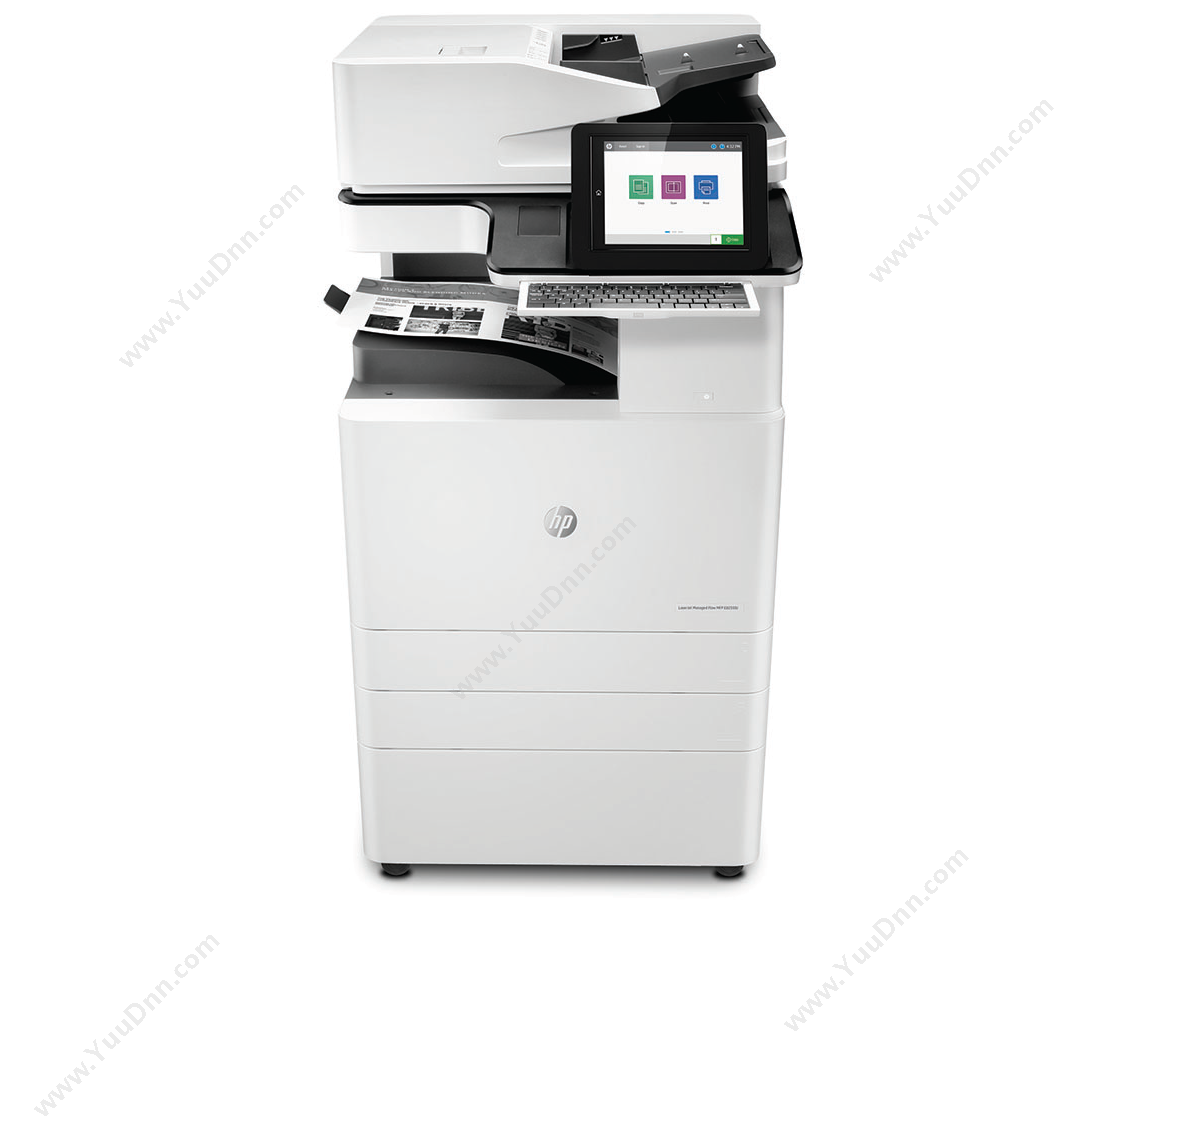 惠普 HP A3X3A71AE82550z 激光复合打印机